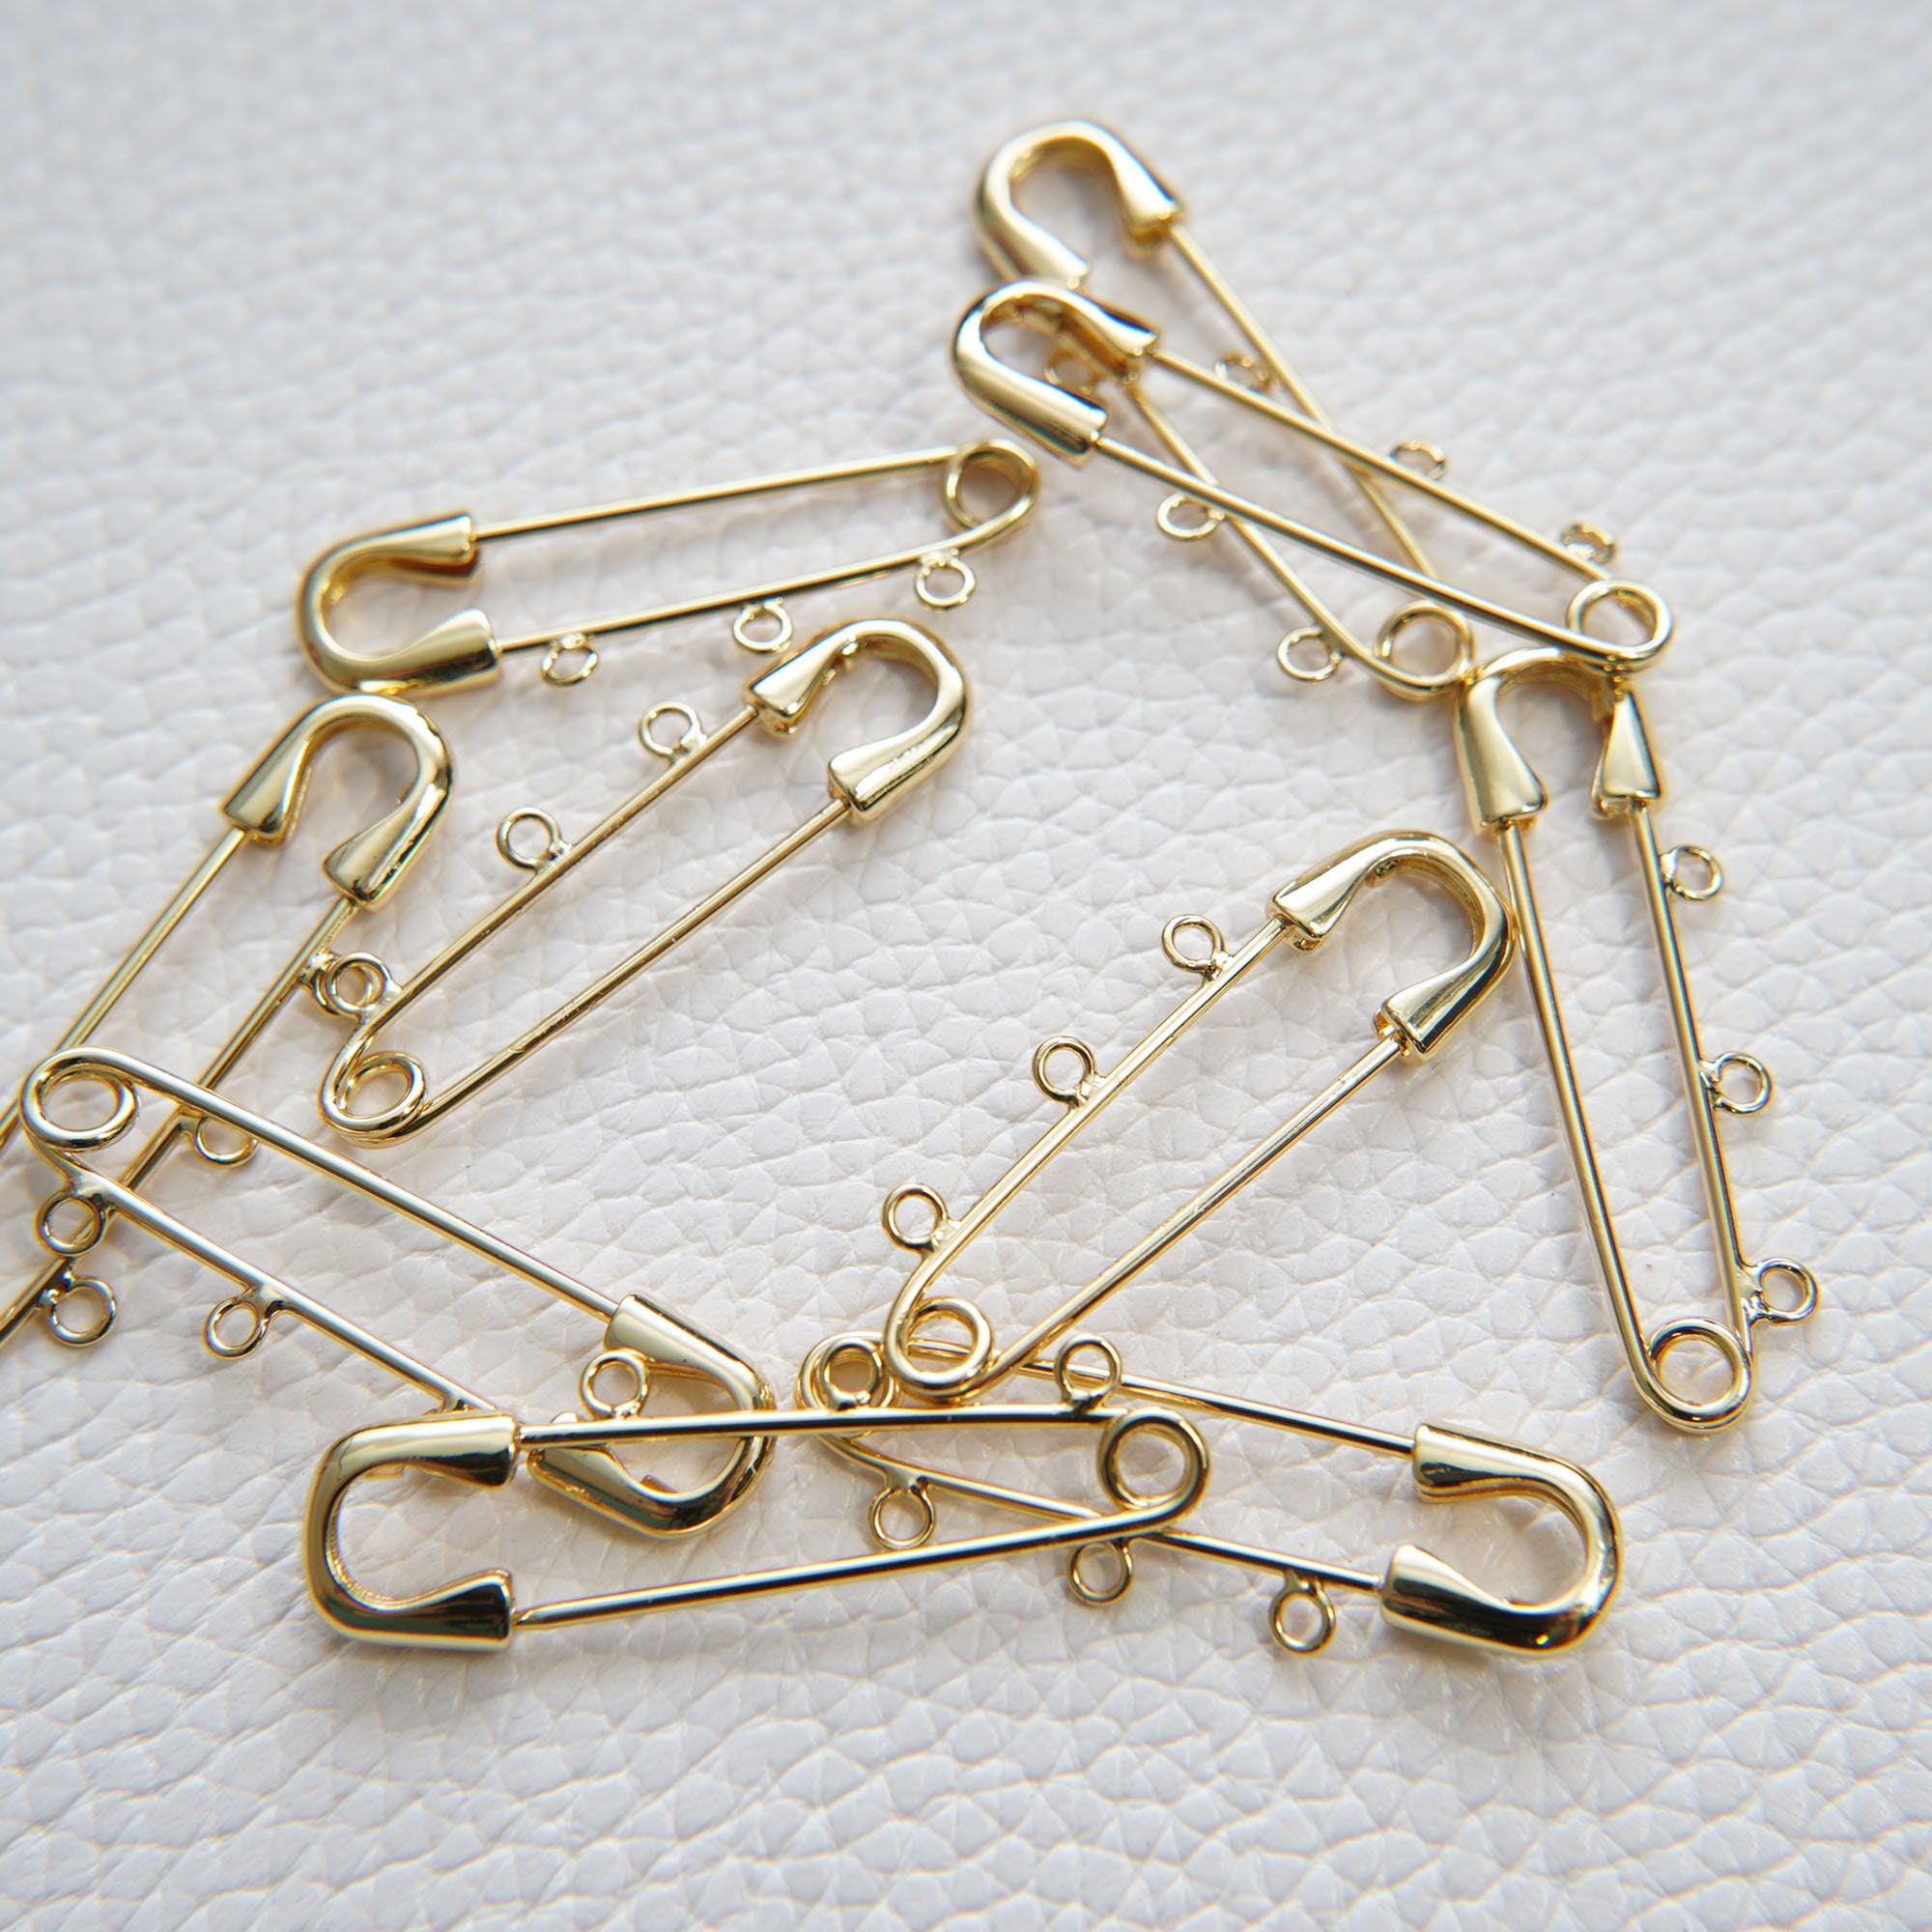 10pcs Large Safety Pins Kilt Pins Safety Pin Brooch Pin Bar Pins Bulk  Safety Pins Jewelry Findings 